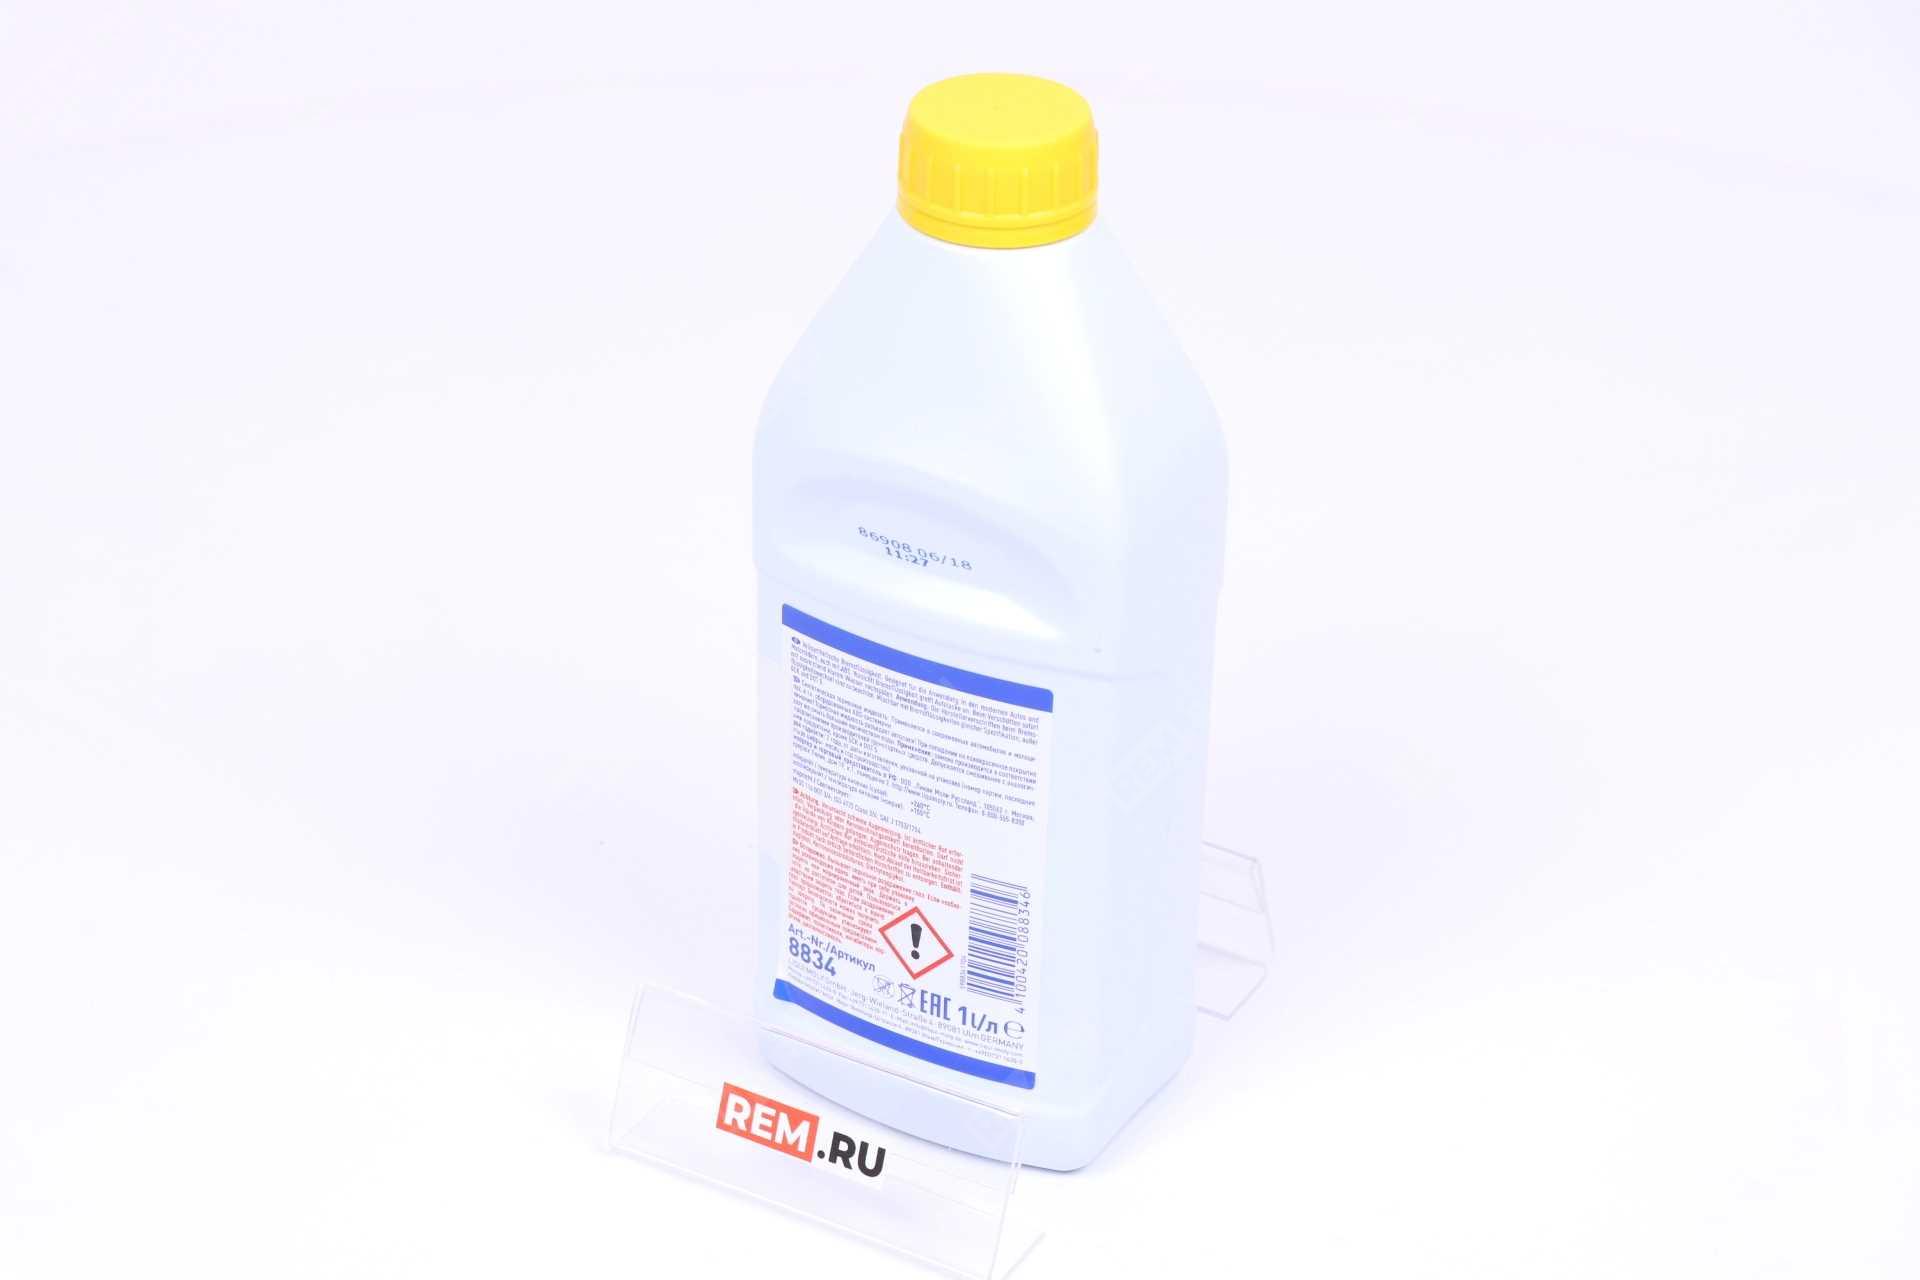  DLM0008834  жидкость тормозная peugeot&citroen dot-4, 1л (фото 3)